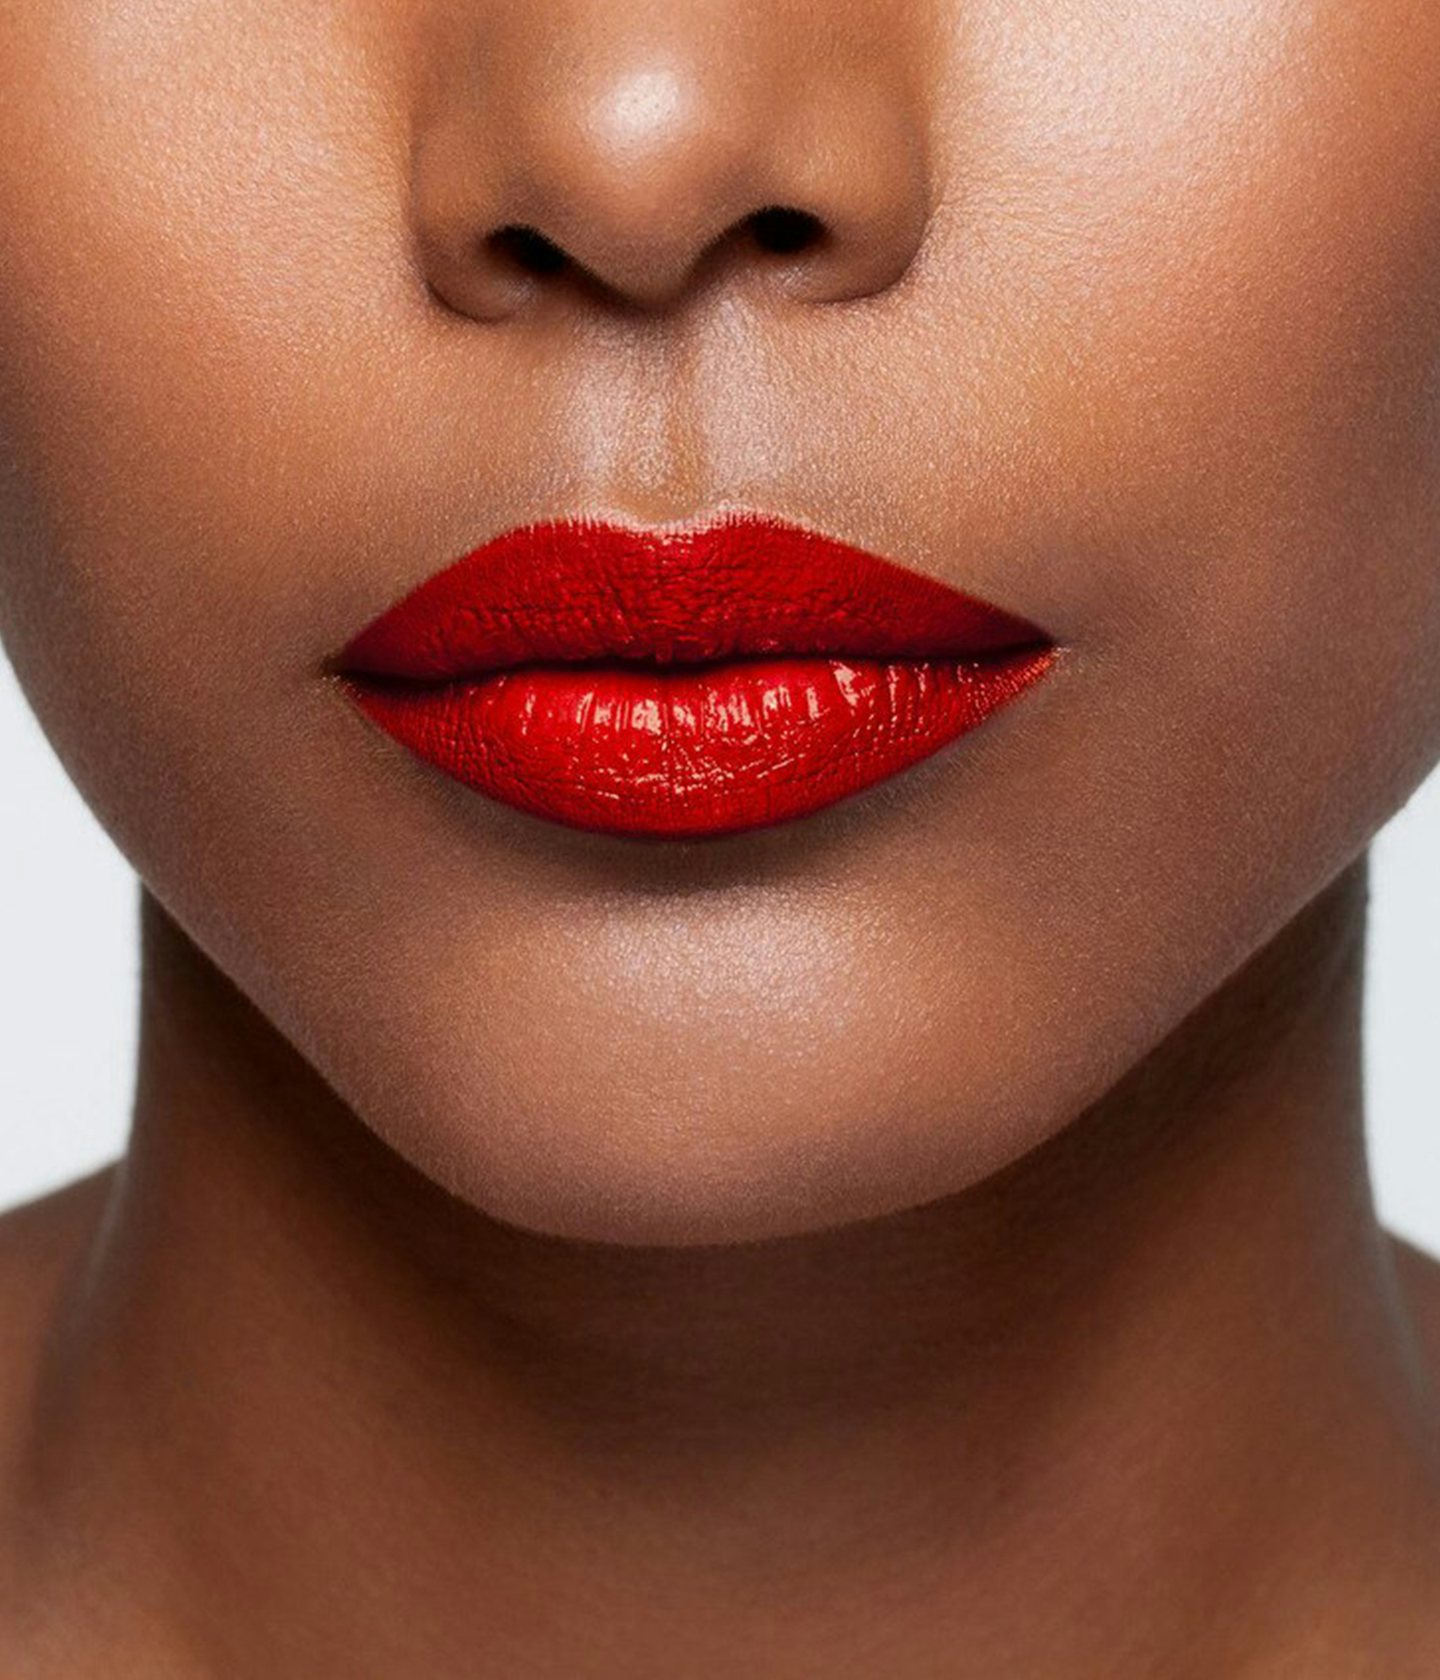 La bouche rouge Le Doré lipstick shade on the lips of a dark skin model